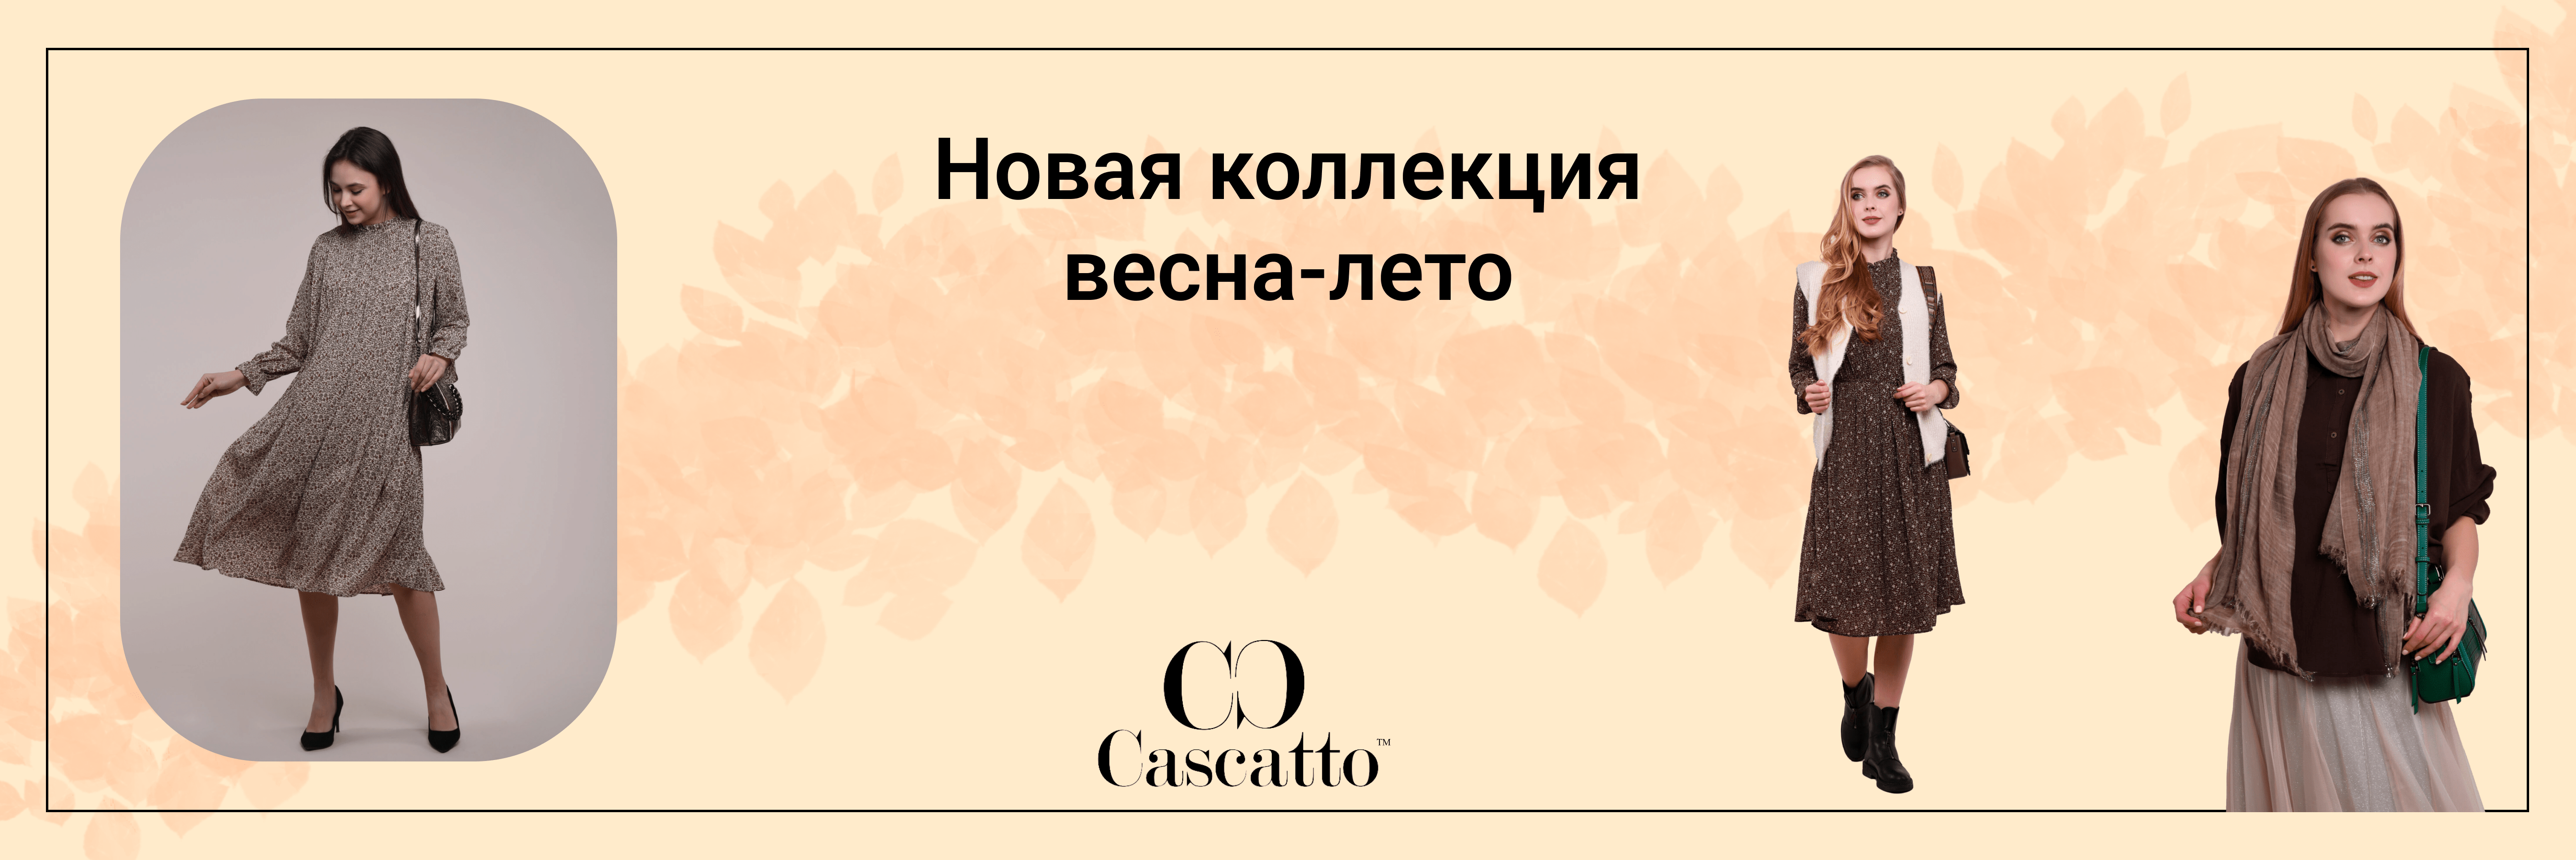 Предложение Cascatto.ru